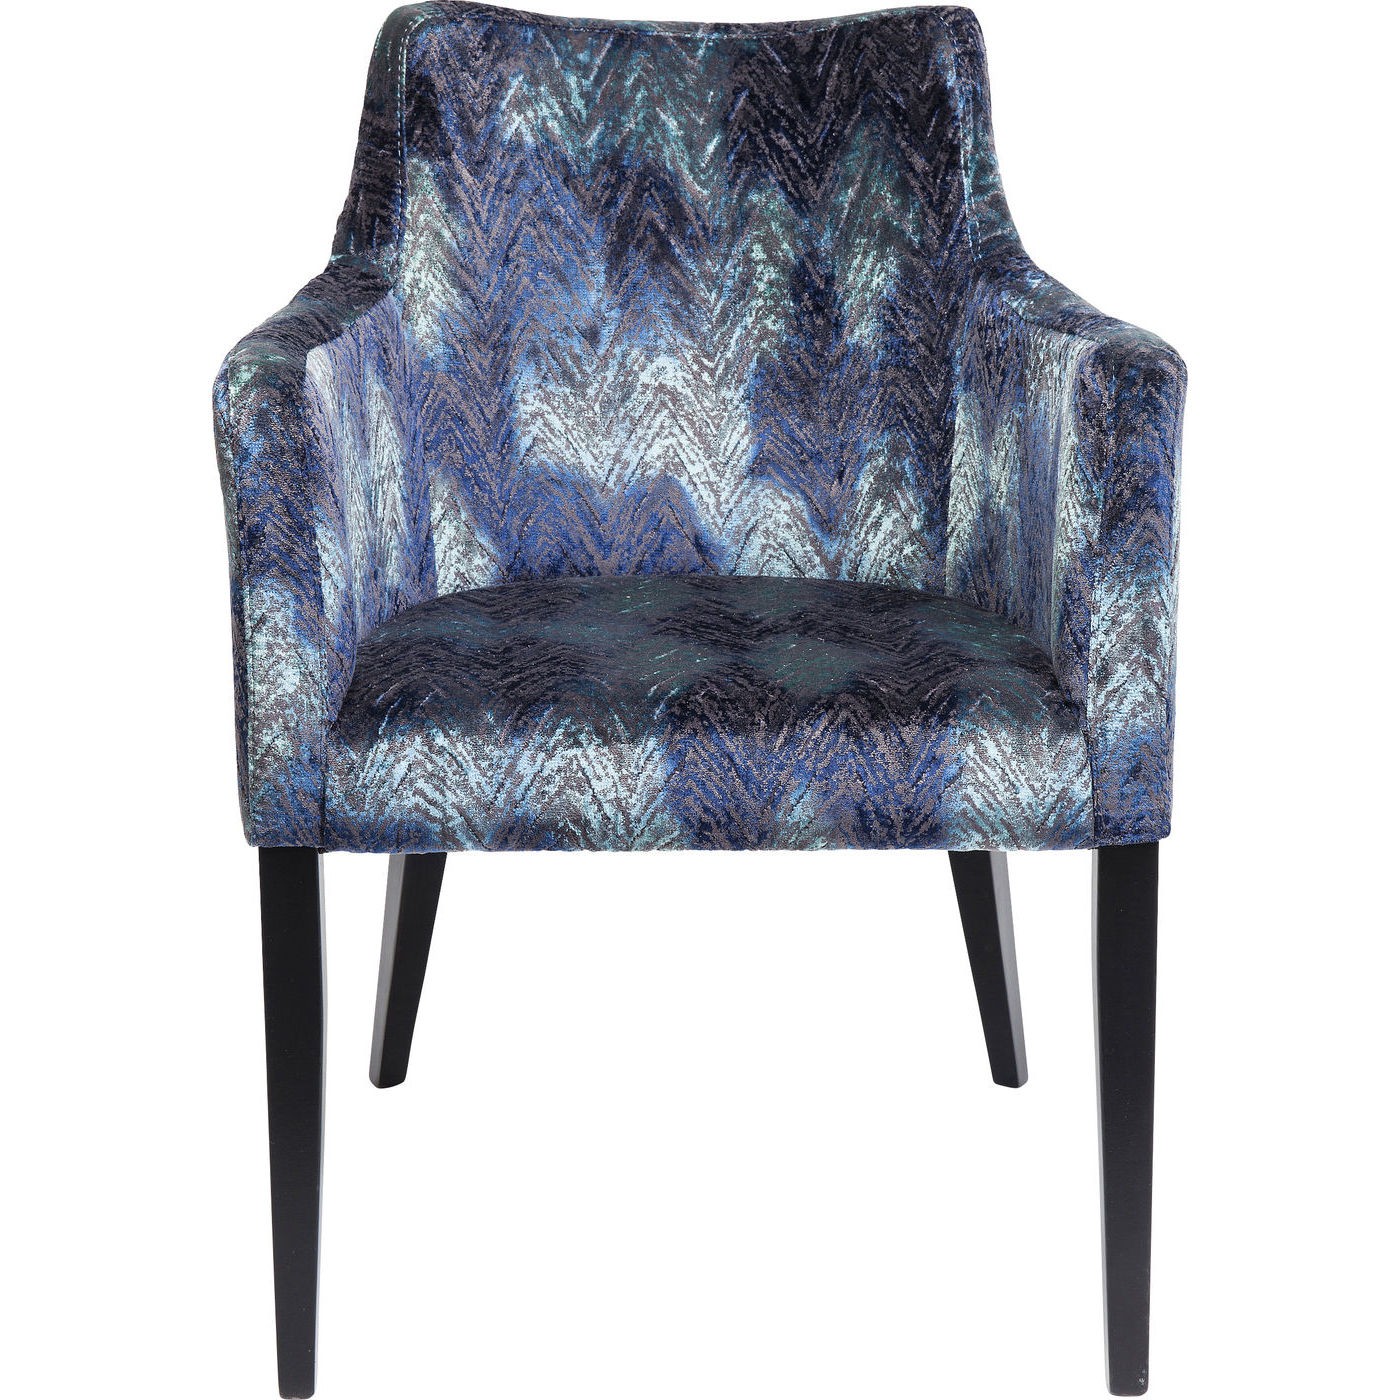 Chaise avec accoudoirs en tissu bleu et hêtre laqué noir